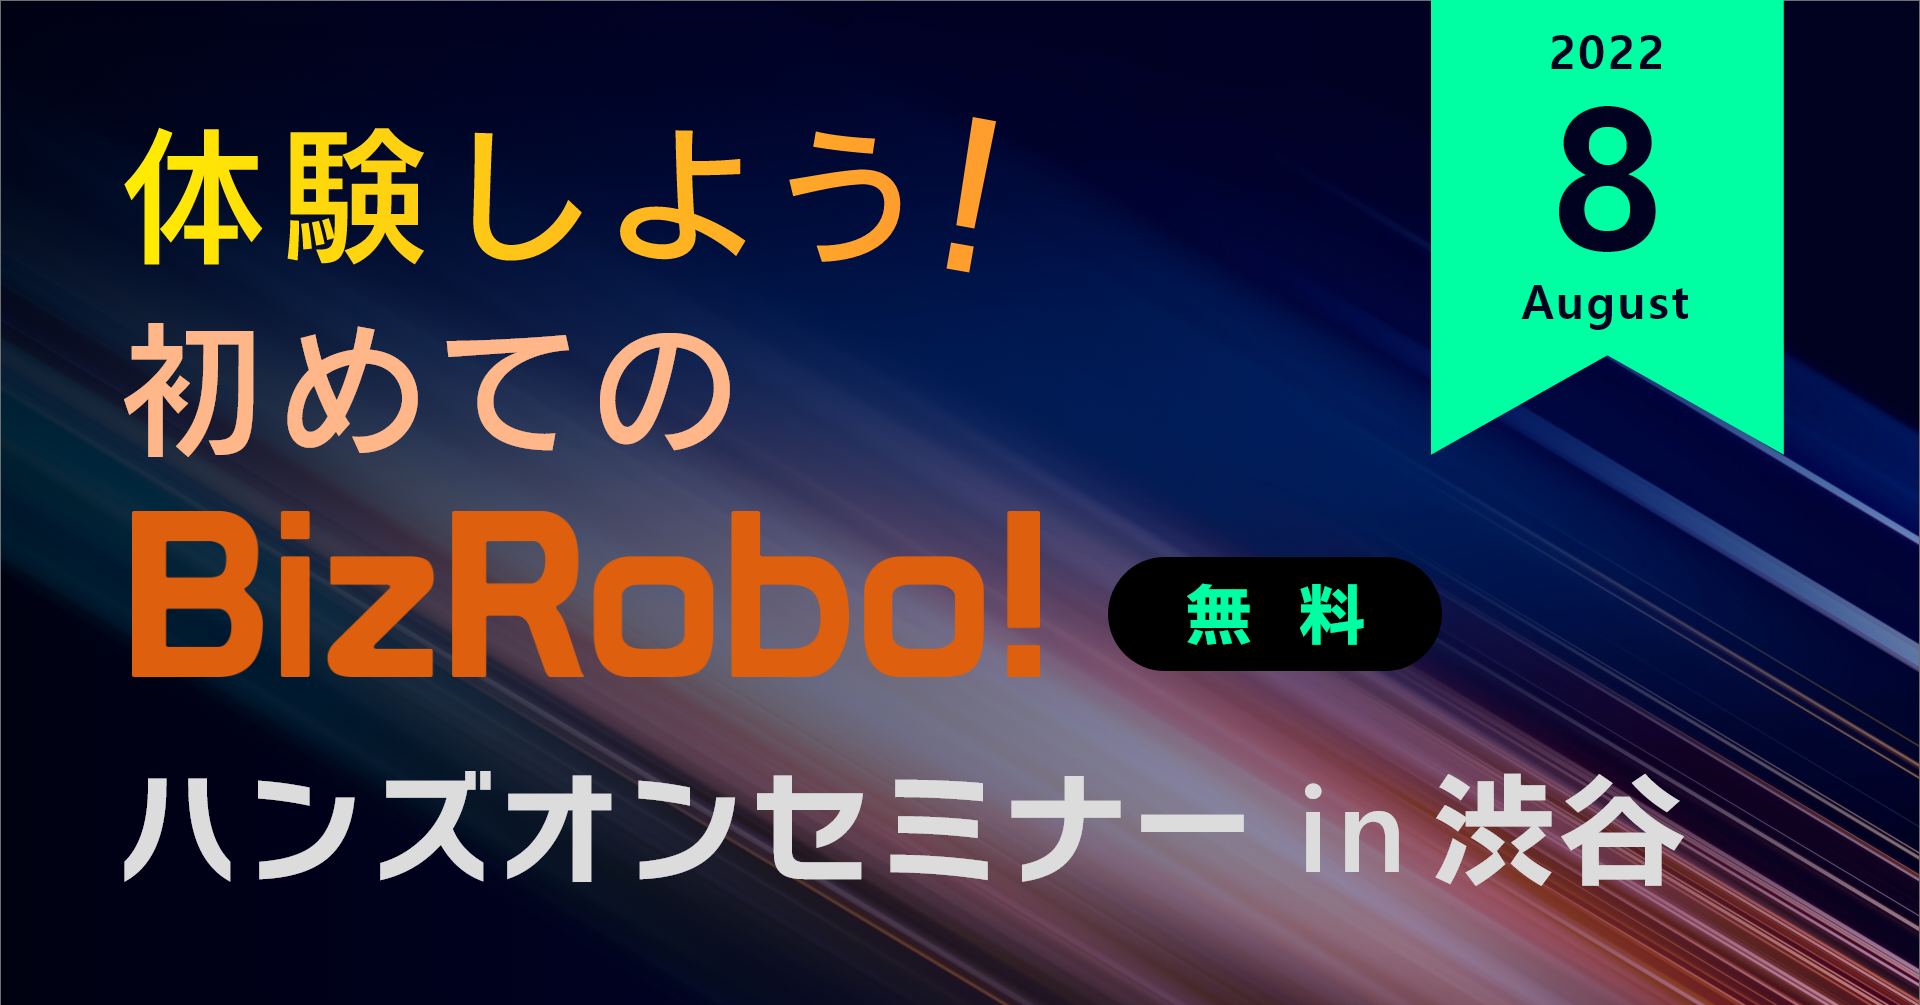 体験しよう！初めてのBizRobo! ハンズオンセミナー in 渋谷【8月】
